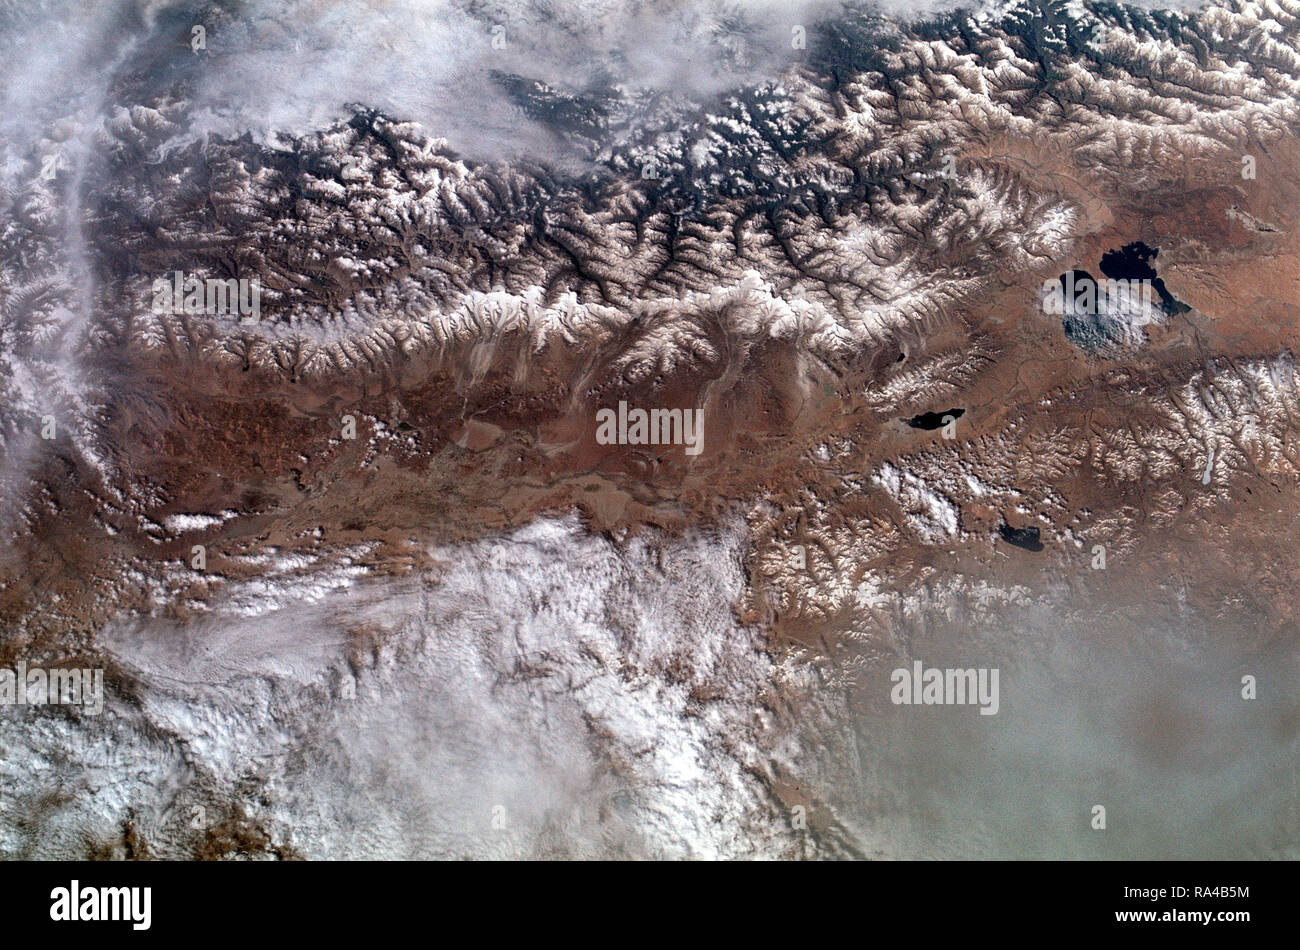 (22 Juni 1973) - - - Der große Bergkette des Himalaya, Indien/Tibet (30,5 N, 81,5 E) ist buchstäblich die oben auf der Welt, wo die Berge auf über 20.000 ft steigen. effektiv Tibet isoliert vom Rest der Welt. Die beiden Seen in der Mitte des Bildes zu sehen sind die Laga Co und die Kunggyu Co sich nur innerhalb der tibetischen Grenze. Stockfoto